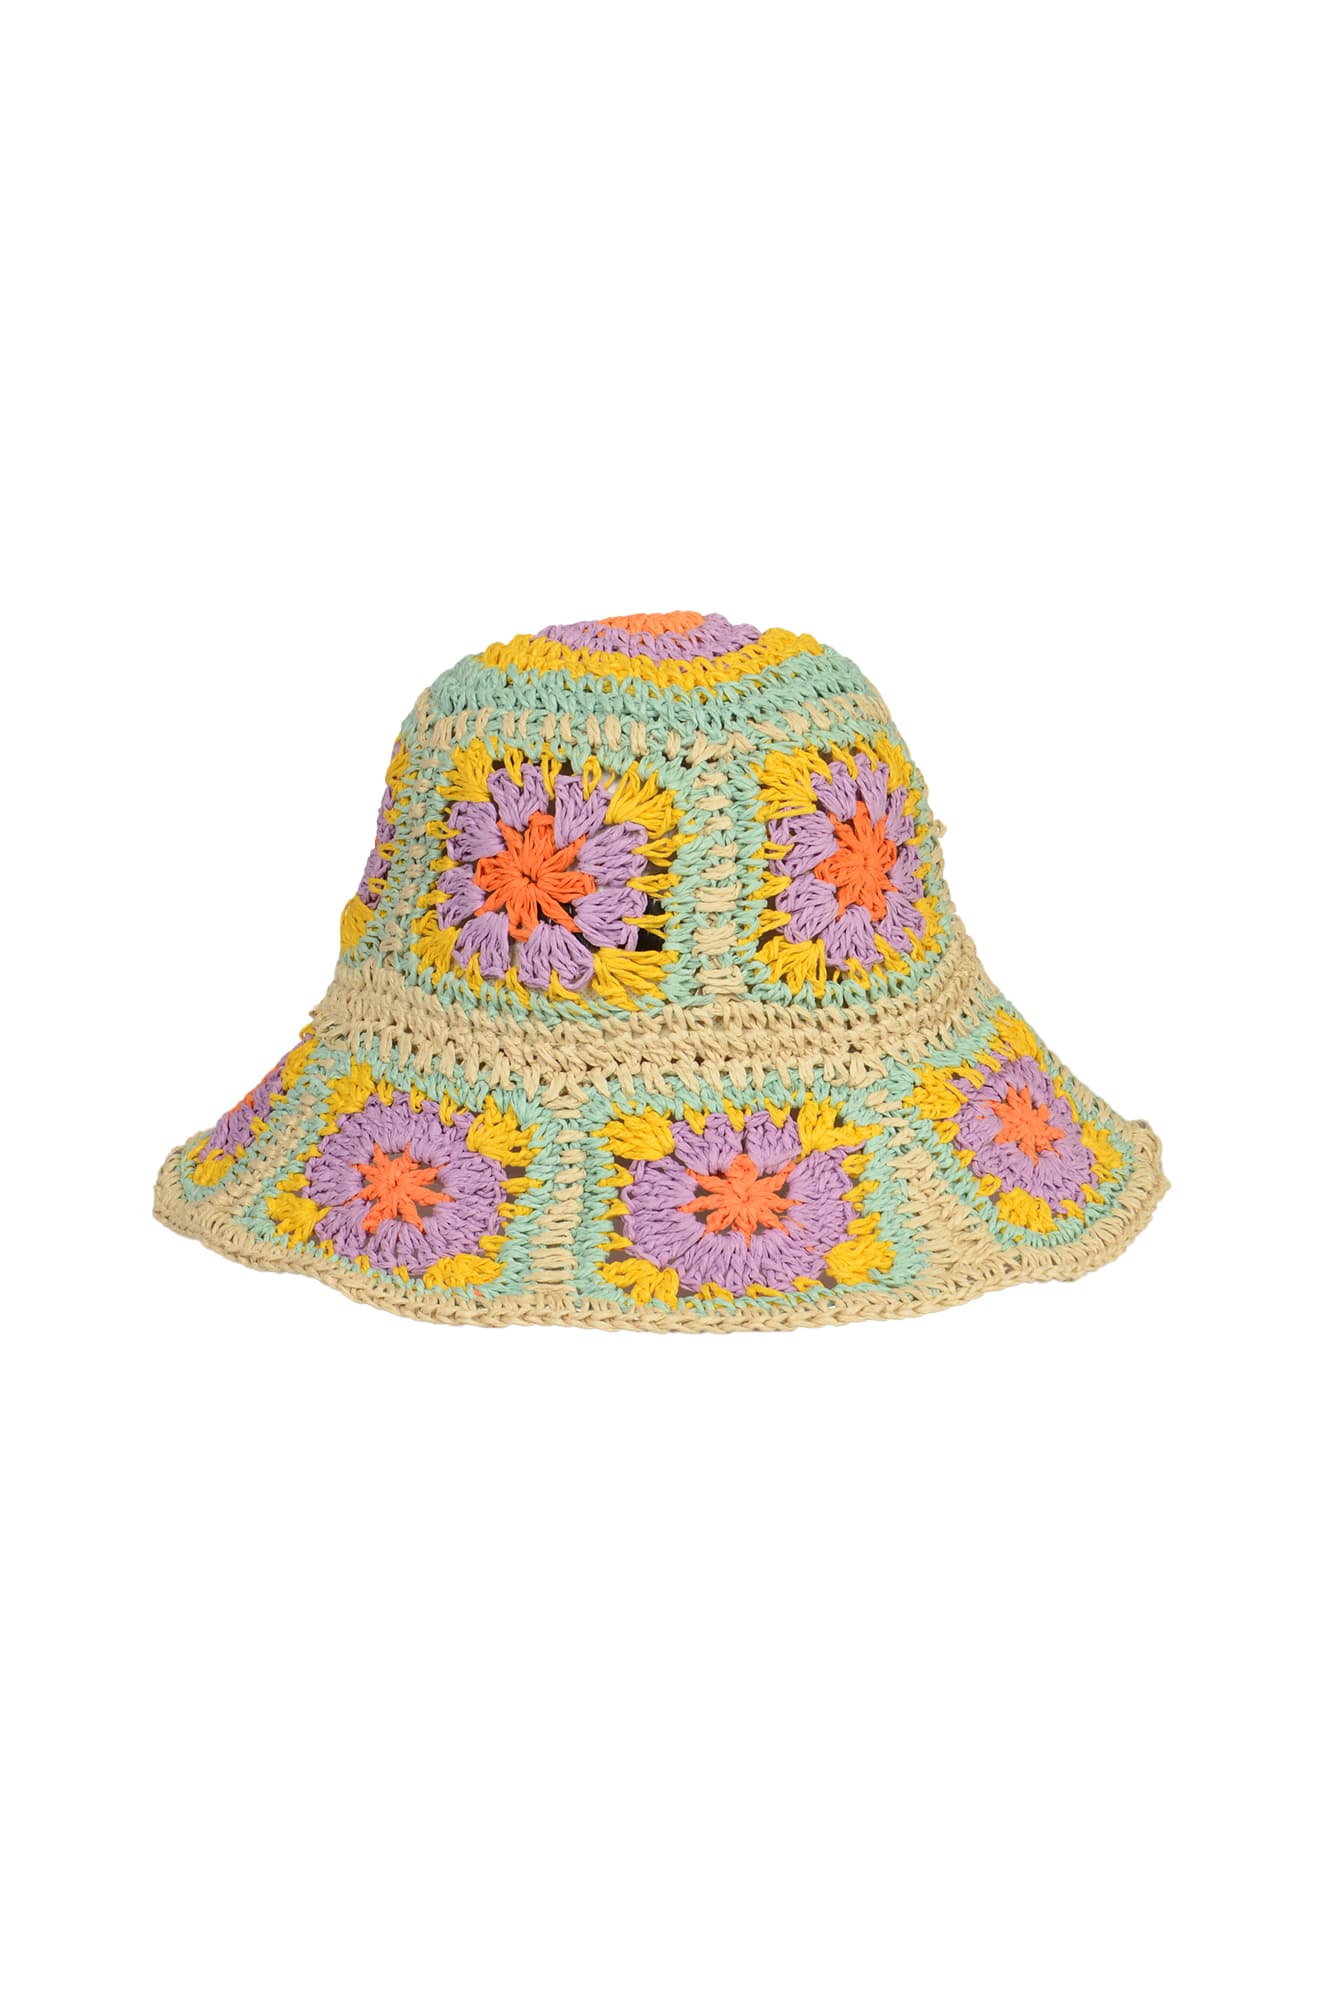 Crochet Patterned Hat